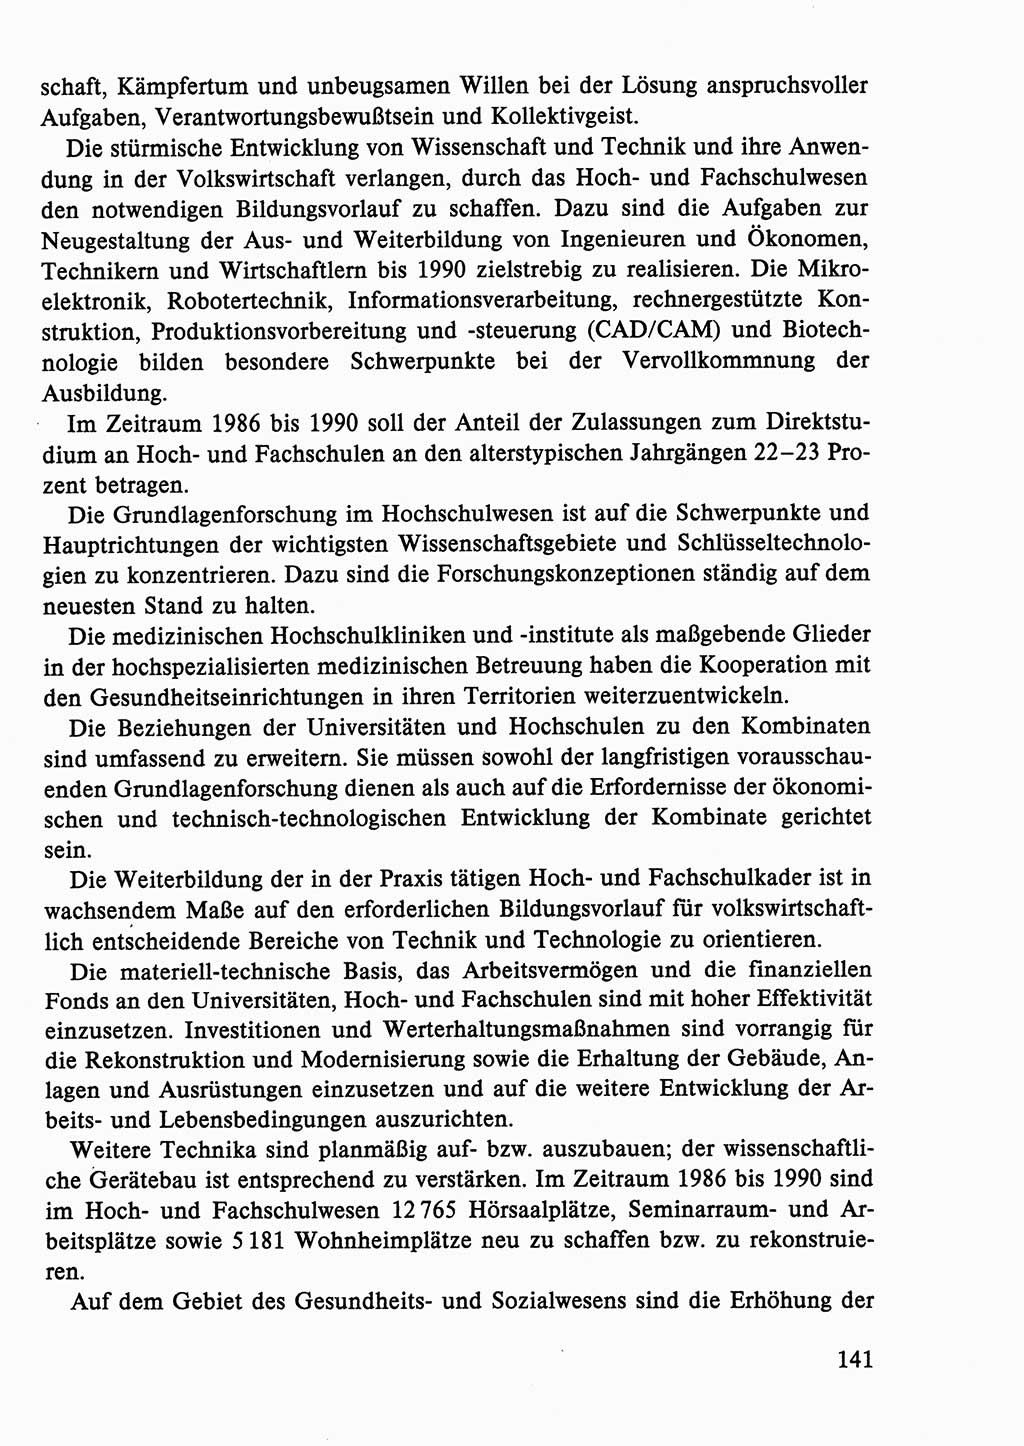 Dokumente der Sozialistischen Einheitspartei Deutschlands (SED) [Deutsche Demokratische Republik (DDR)] 1986-1987, Seite 141 (Dok. SED DDR 1986-1987, S. 141)